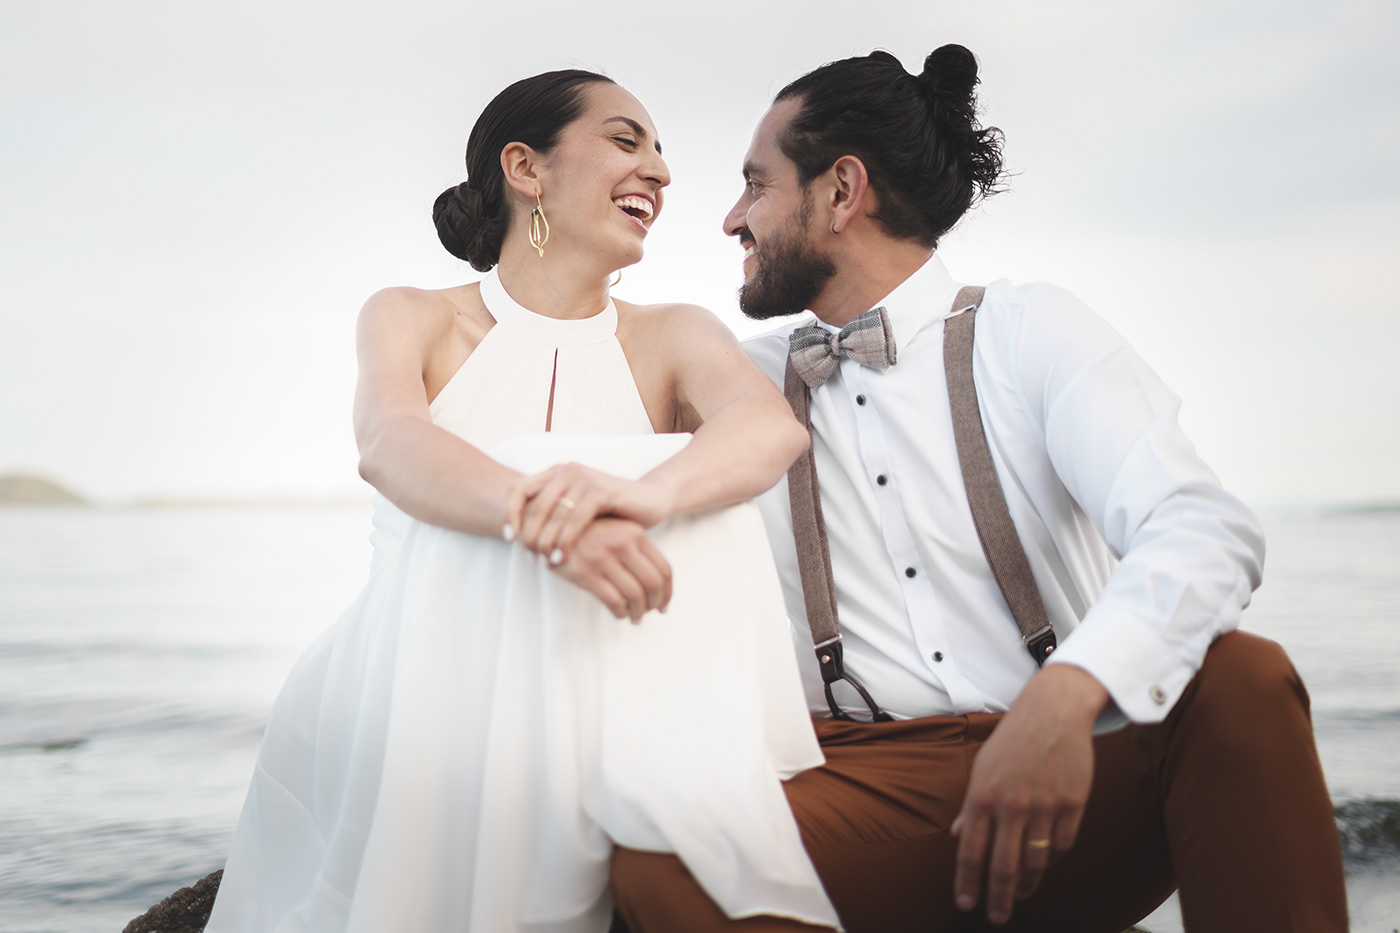 Ancud bodas castro chiloe fotografa fotografo fotos auténticas matrimonios Novia novio retratos sentir